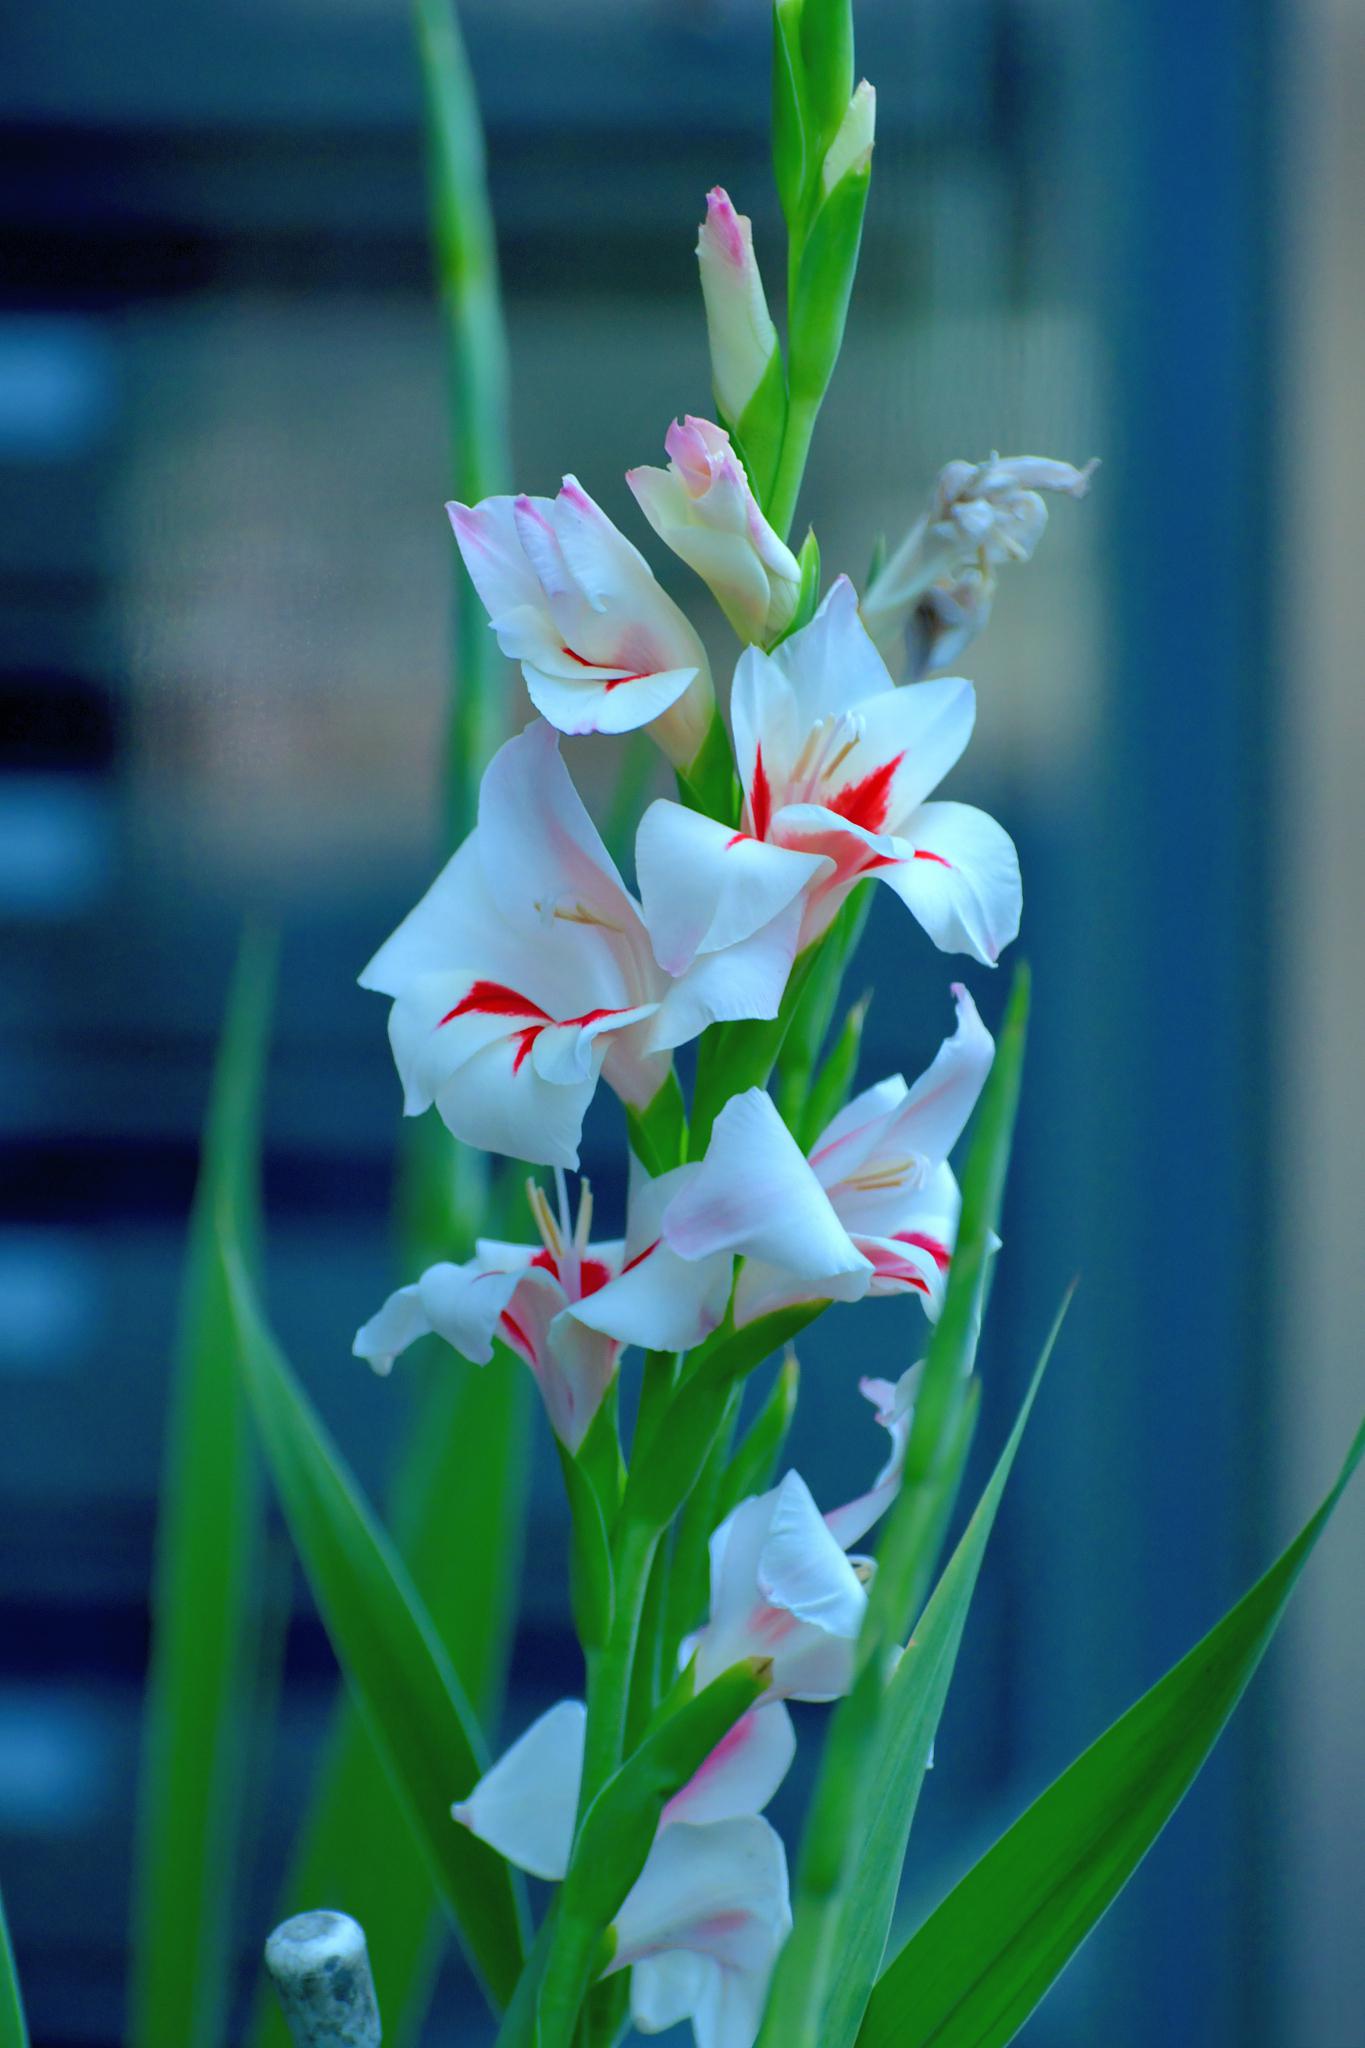 剑兰:坚强与自信的象征 剑兰,学名gladiolus,又称唐菖蒲,是百合科的一